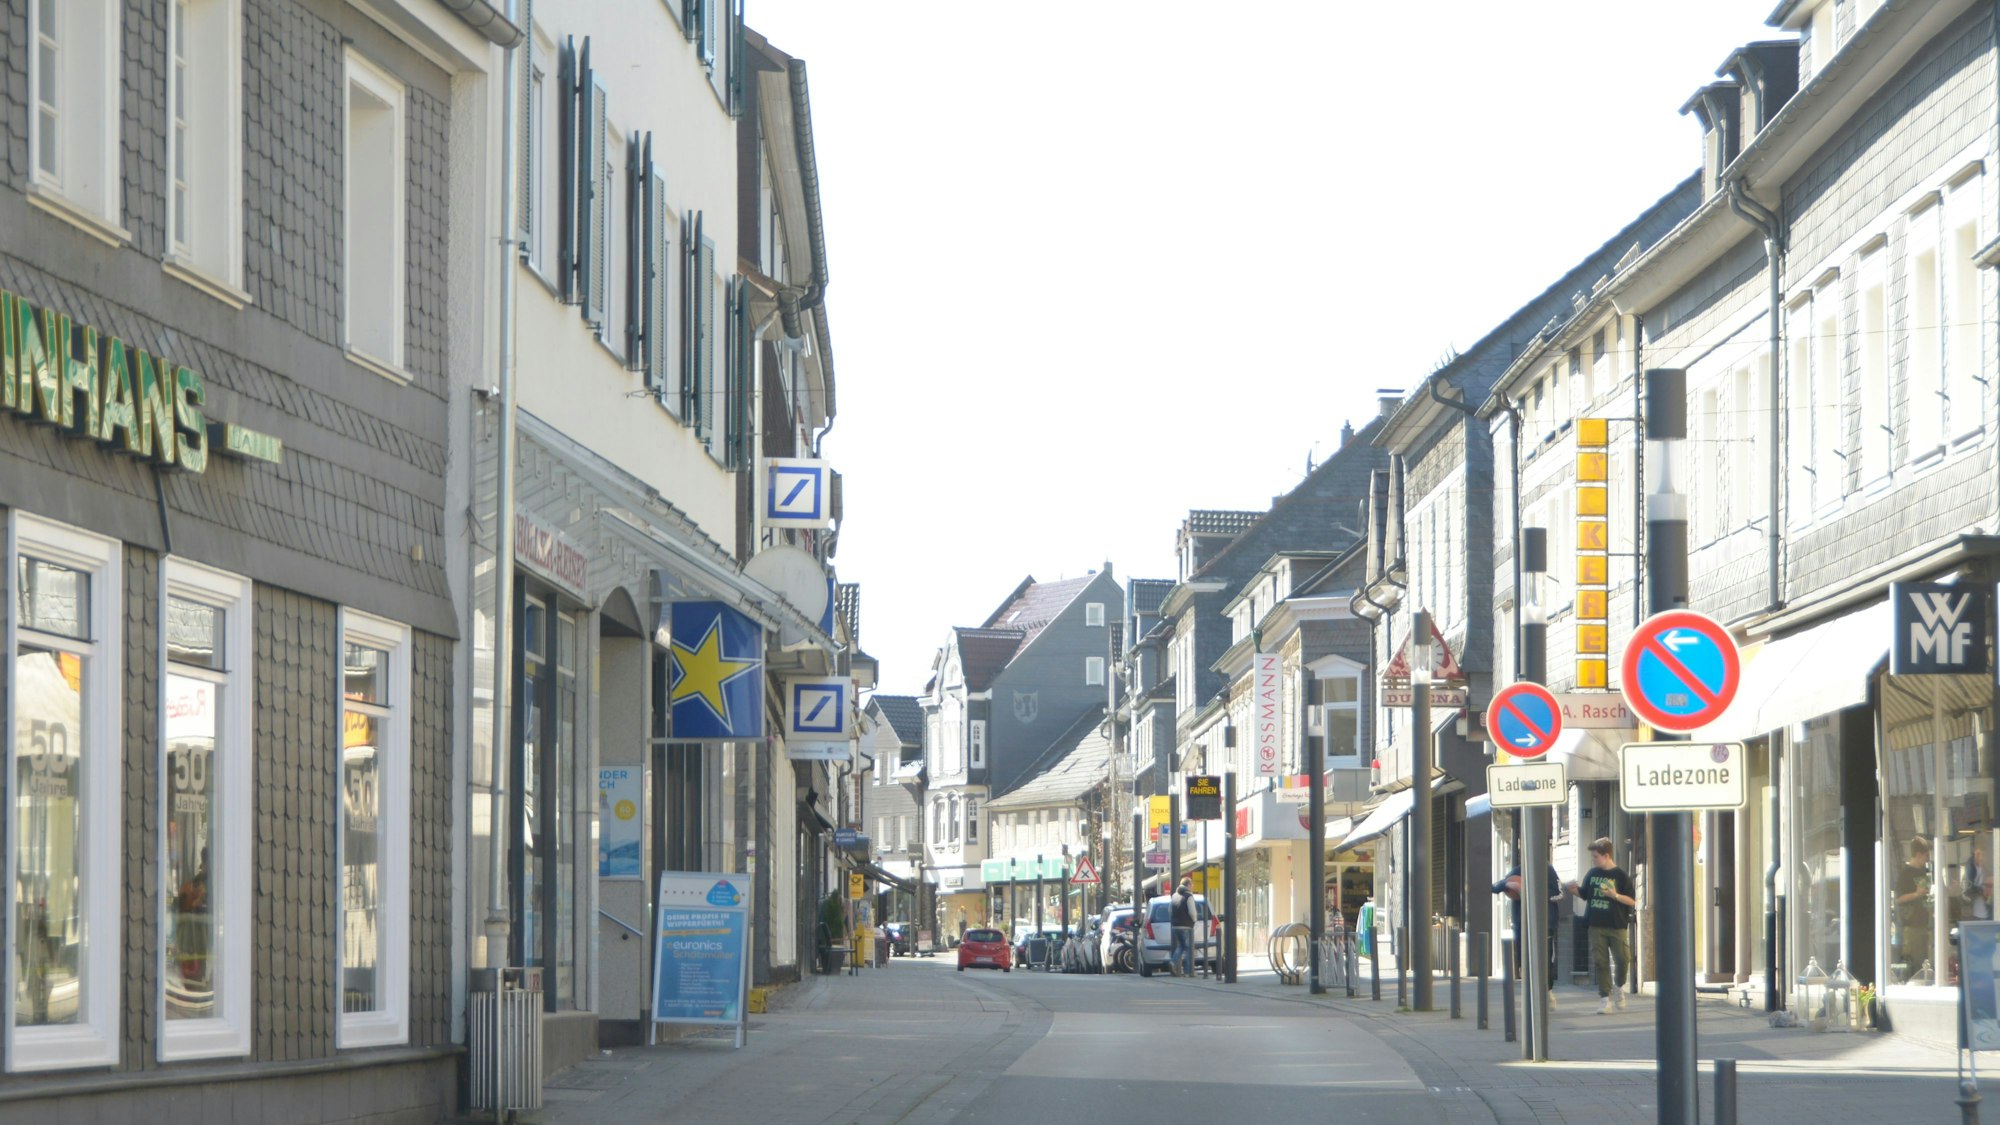 Die Untere Straße in Wipperfürth